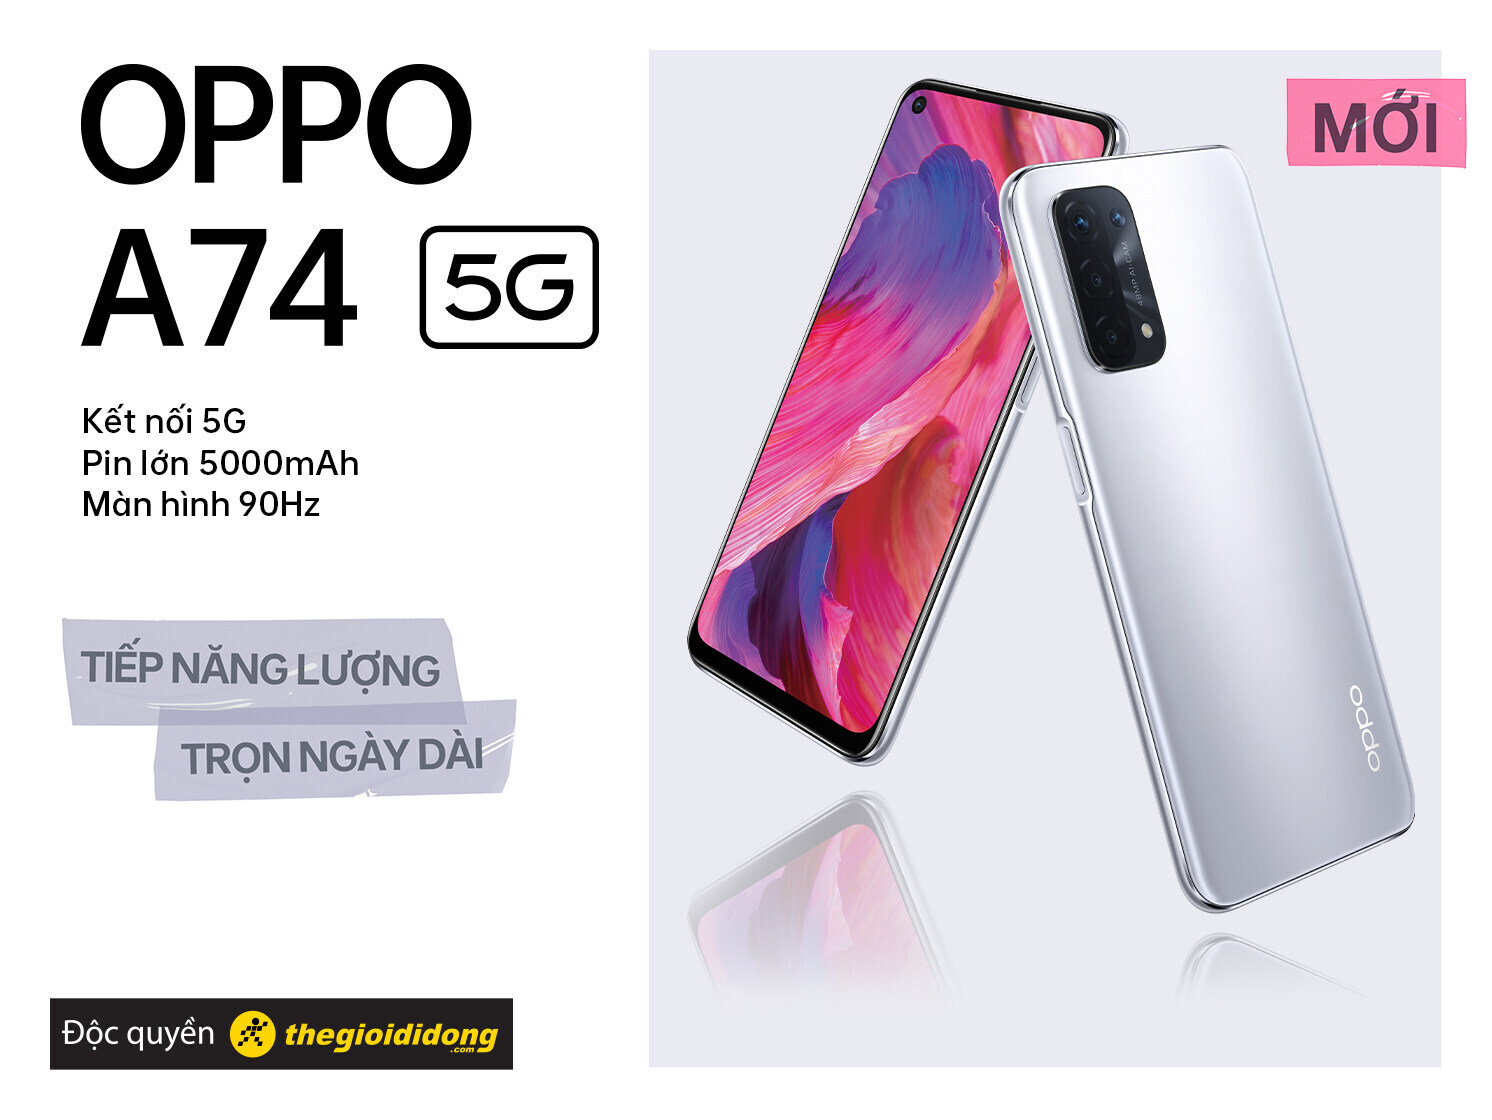 Với tốc độ truyền tải 5G nhanh chóng, OPPO A74 5G sẽ là chiếc điện thoại yêu thích của bạn dành cho các trải nghiệm trực tuyến, cùng với chất lượng hình ảnh và âm thanh tuyệt vời. Đừng bỏ lỡ cơ hội trải nghiệm sản phẩm tuyệt vời này với các tính năng đầy đủ và giá cả hợp lý.